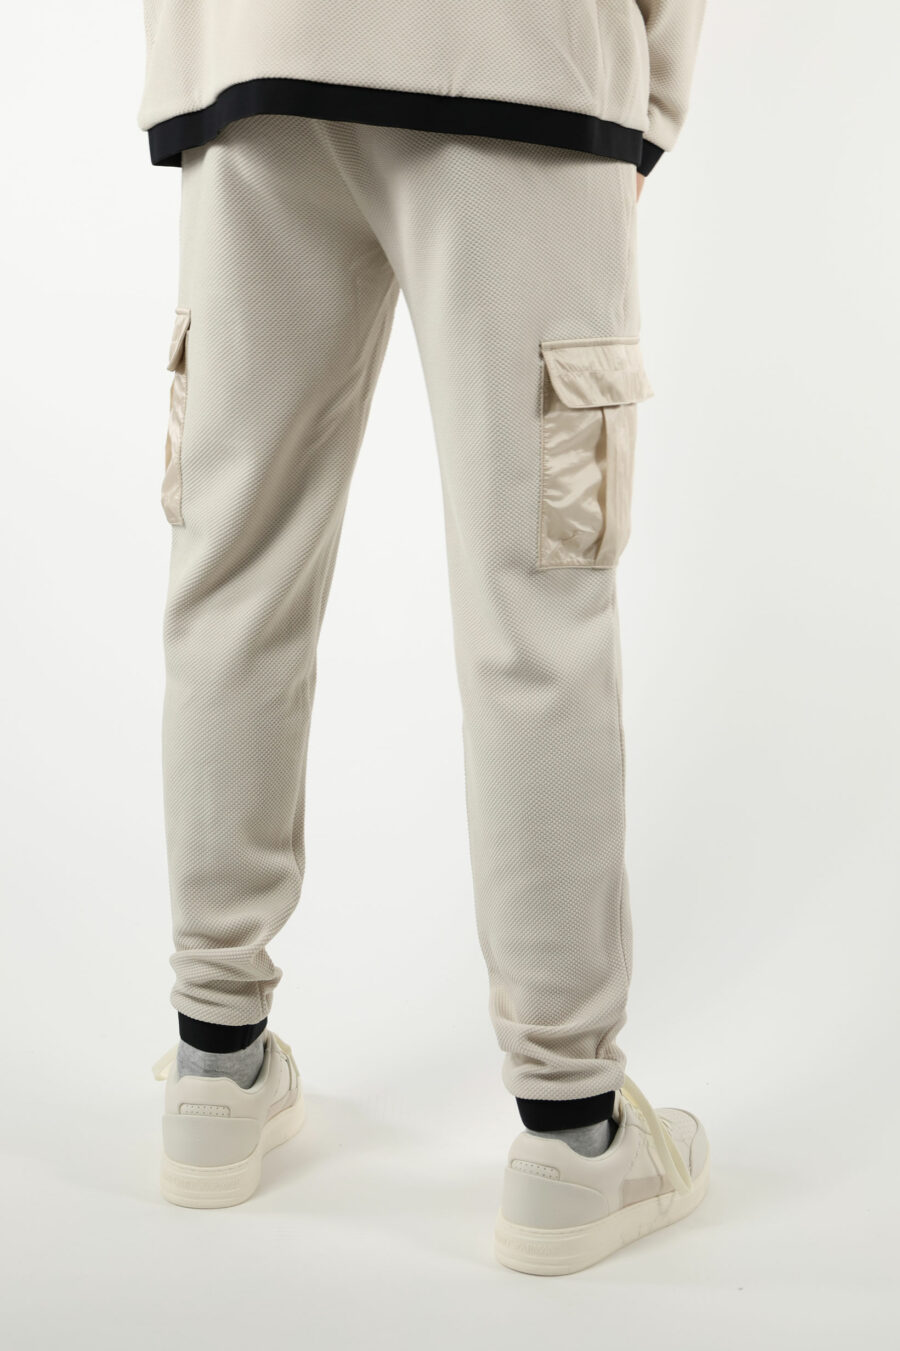 Pantalón de chándal beige mix estilo cargo y minilogo "lux identity" - 110918